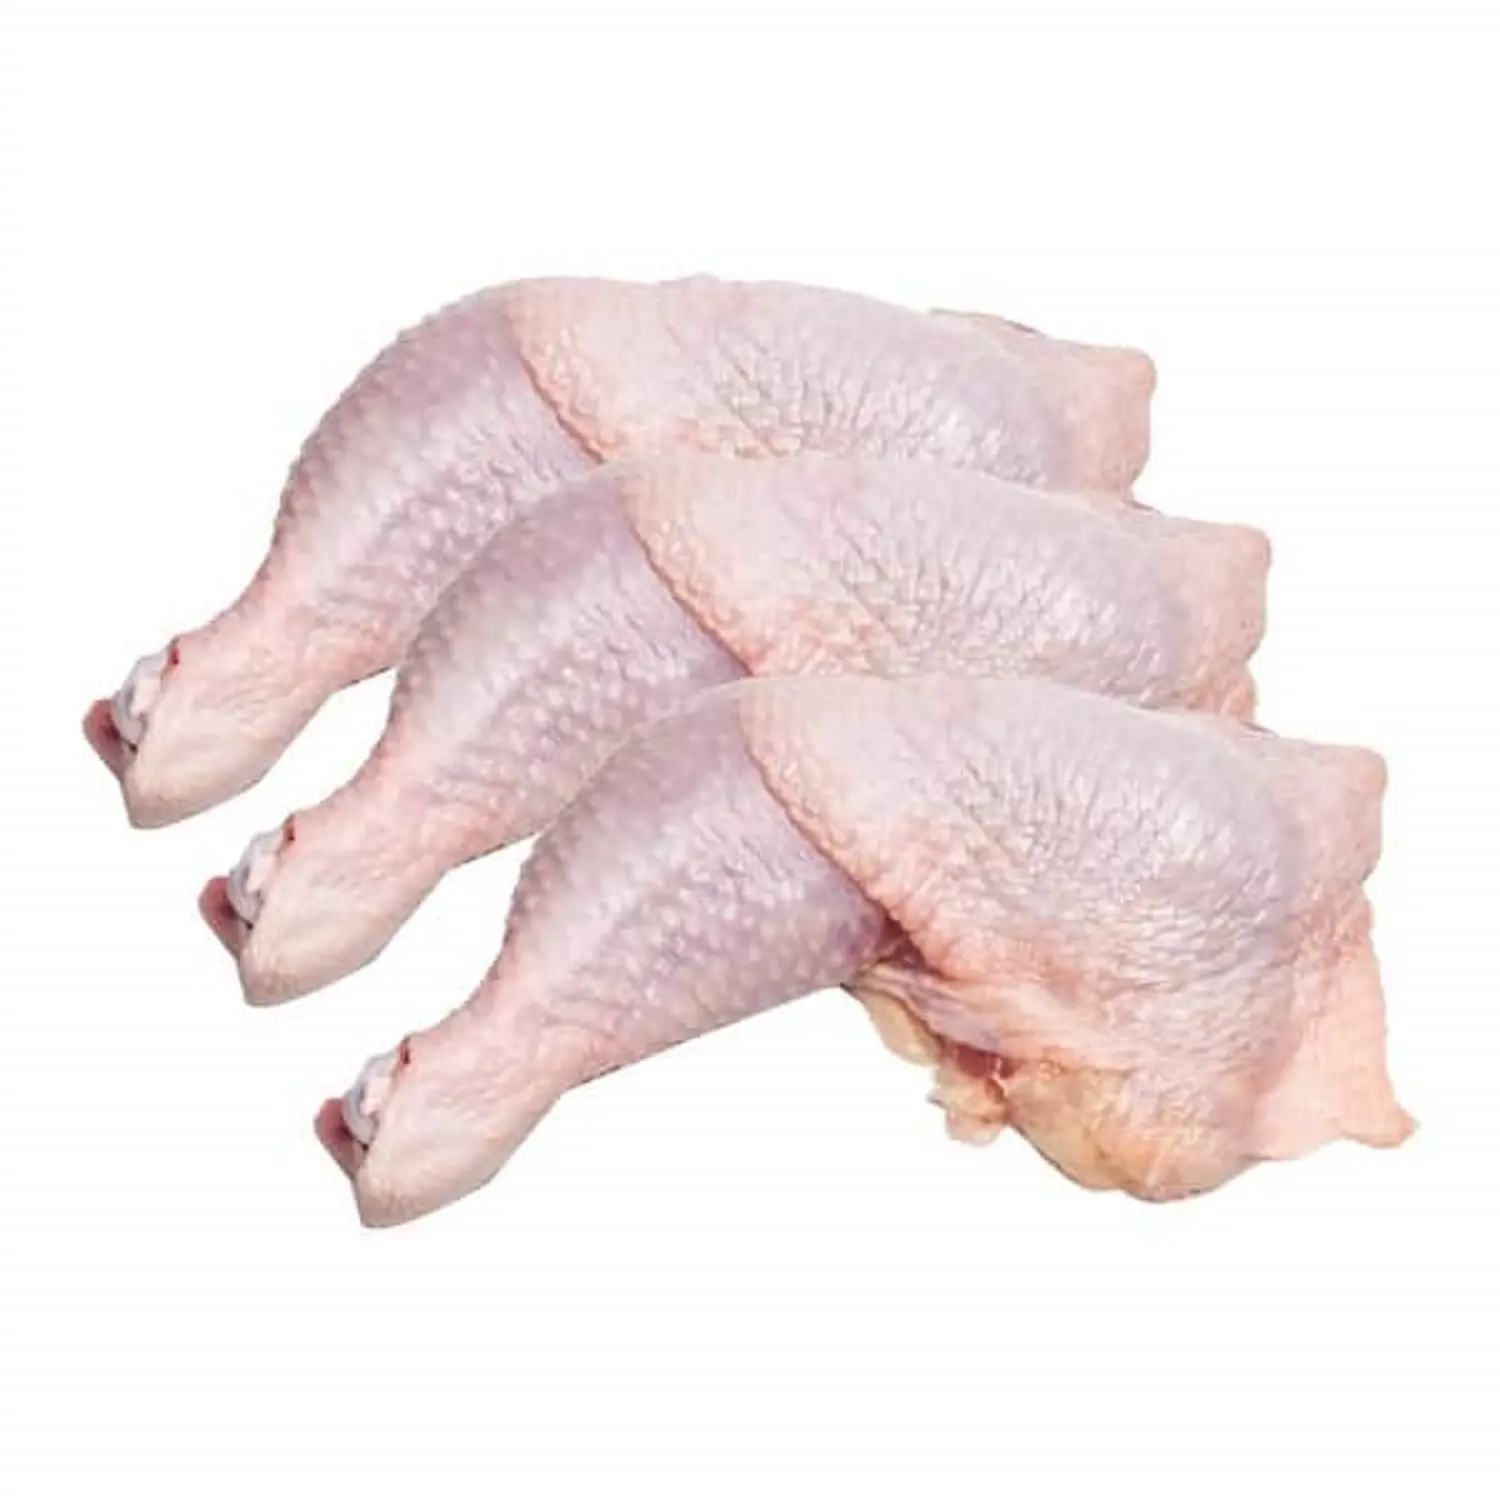 Quality Frozen Chicken Drumsticks/ - Frozen Chicken Quarter Legs (SIF Plant) Verified Wholesale Suppliers